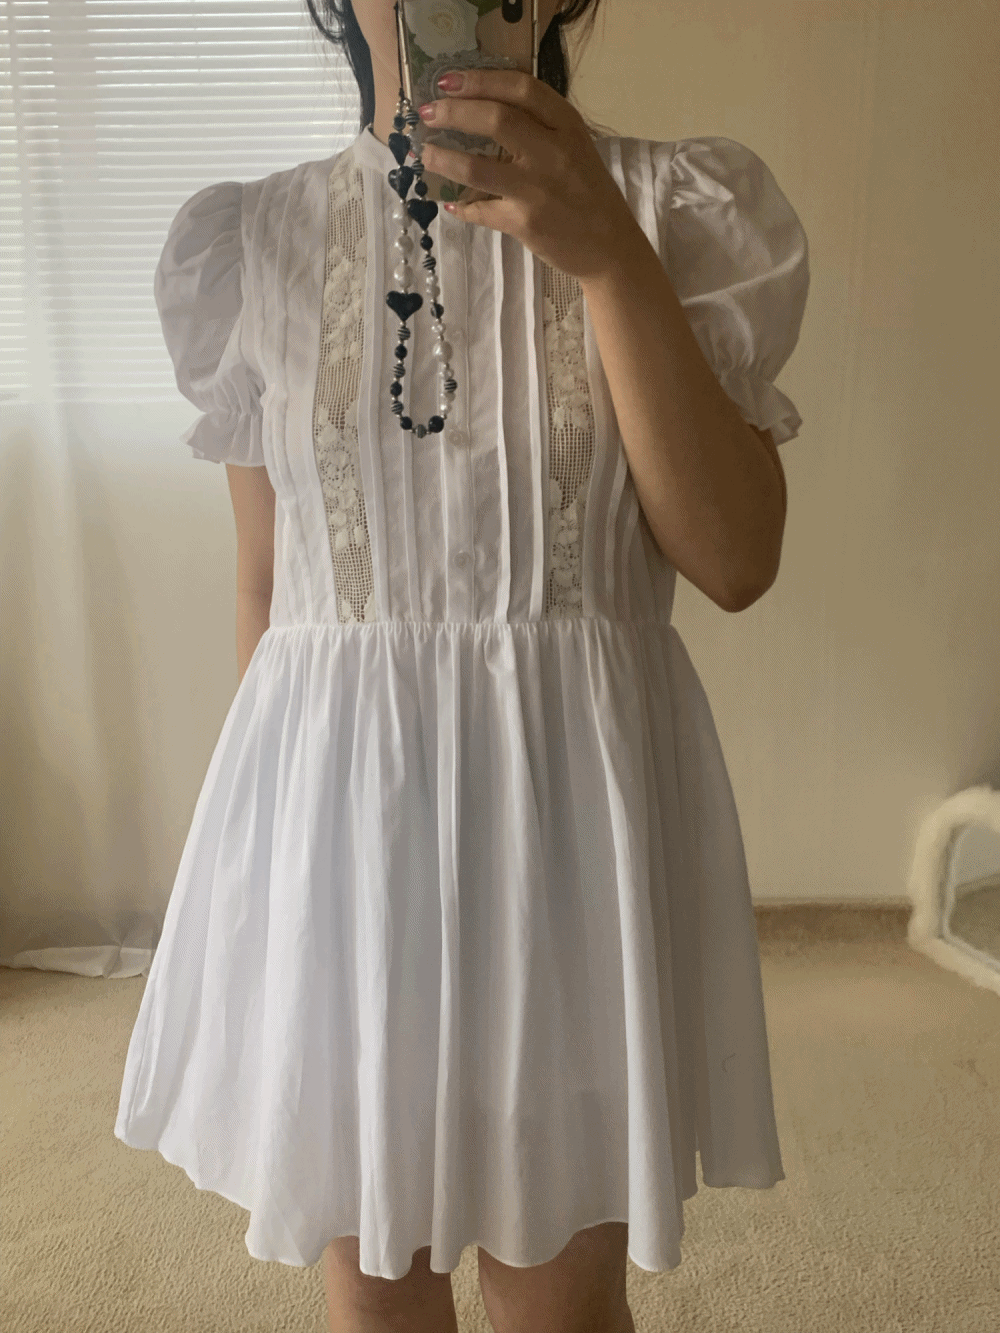 [Dress] Alessie lace vintage dress / one color